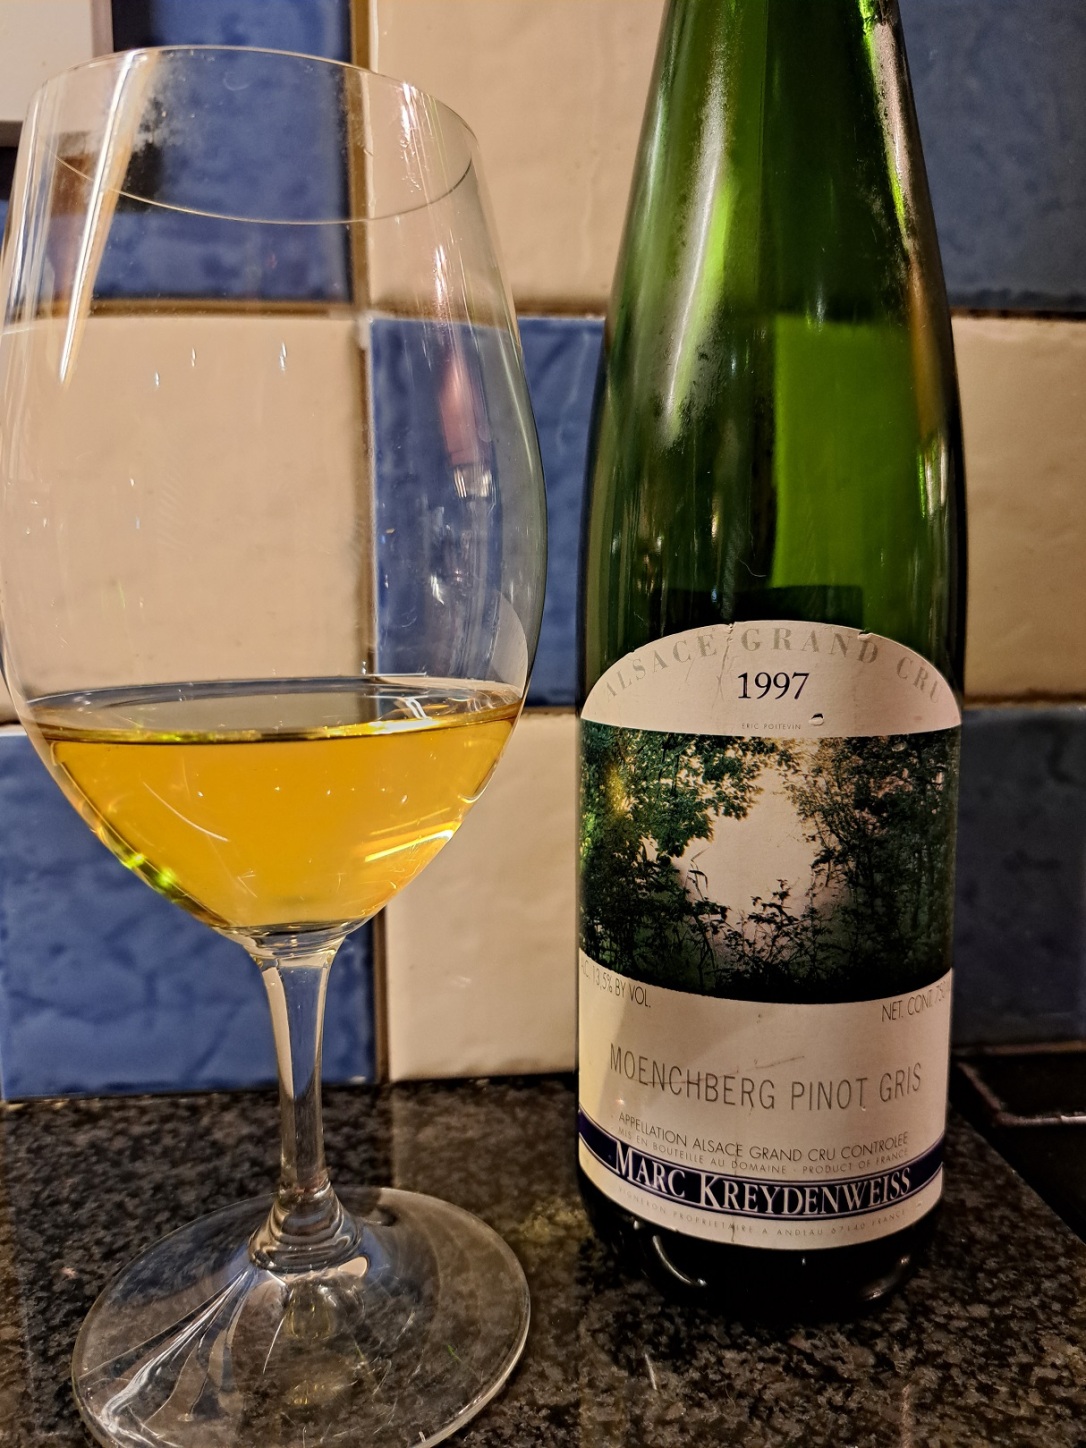 Marc Kreydenweiss Alsace Grand Cru Moenchberg Pinot Gris 1997 - bottle & glass